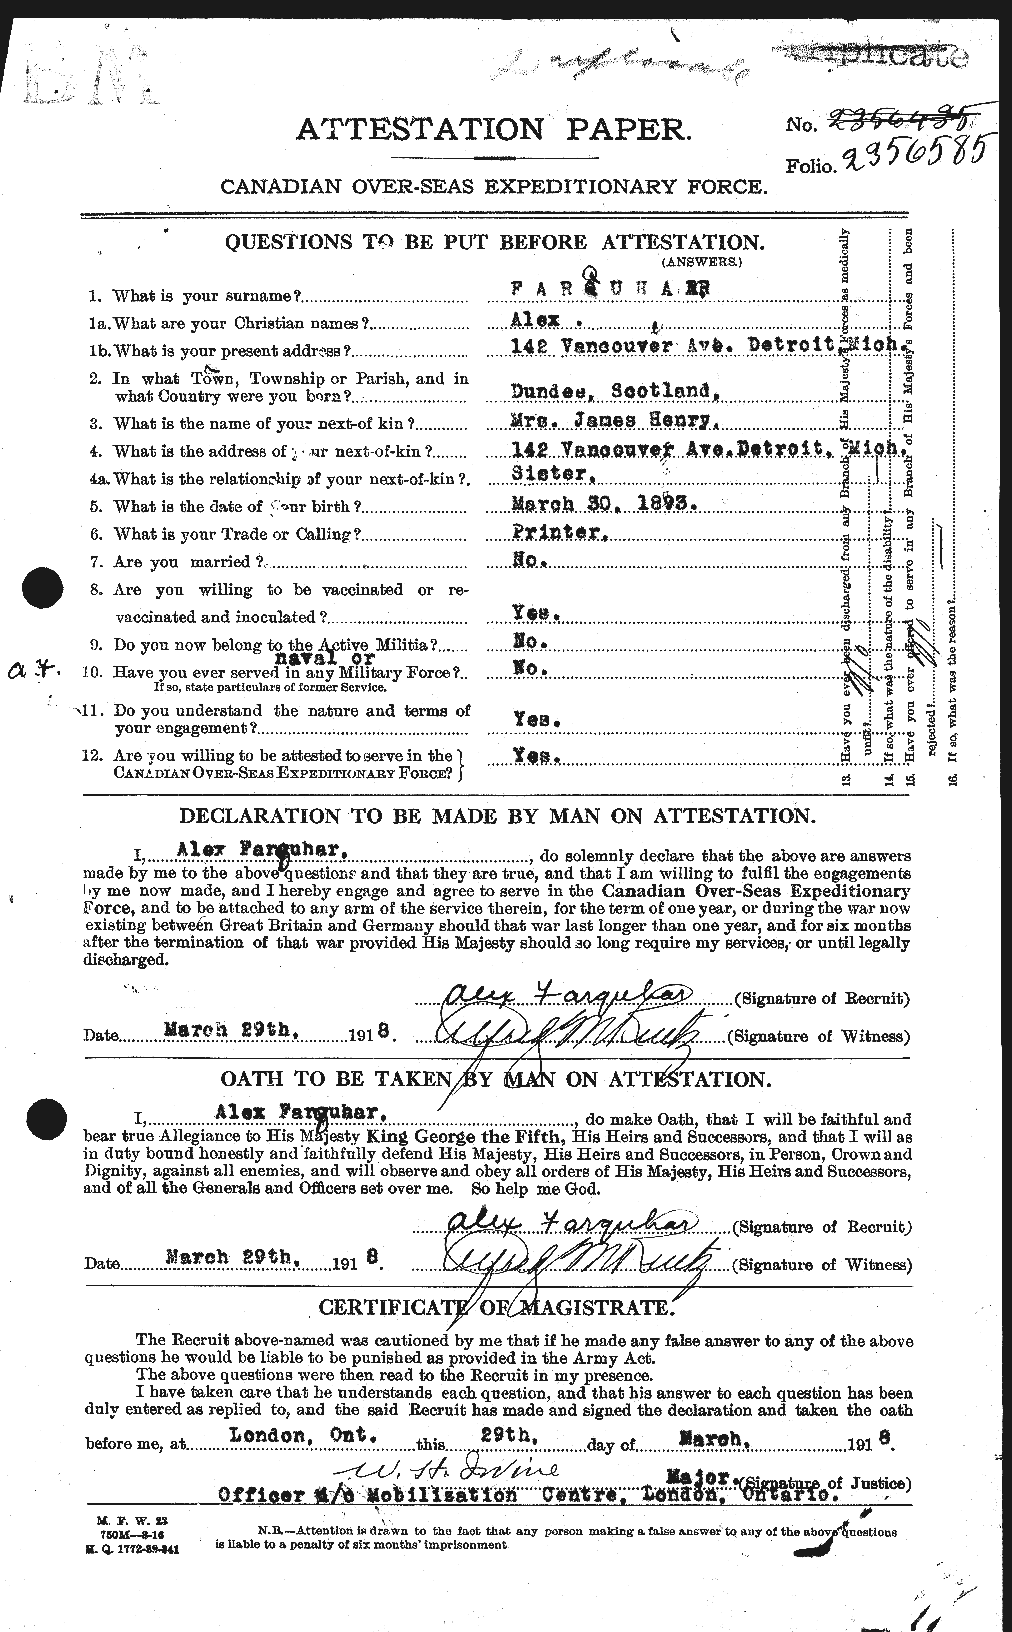 Dossiers du Personnel de la Première Guerre mondiale - CEC 318757a